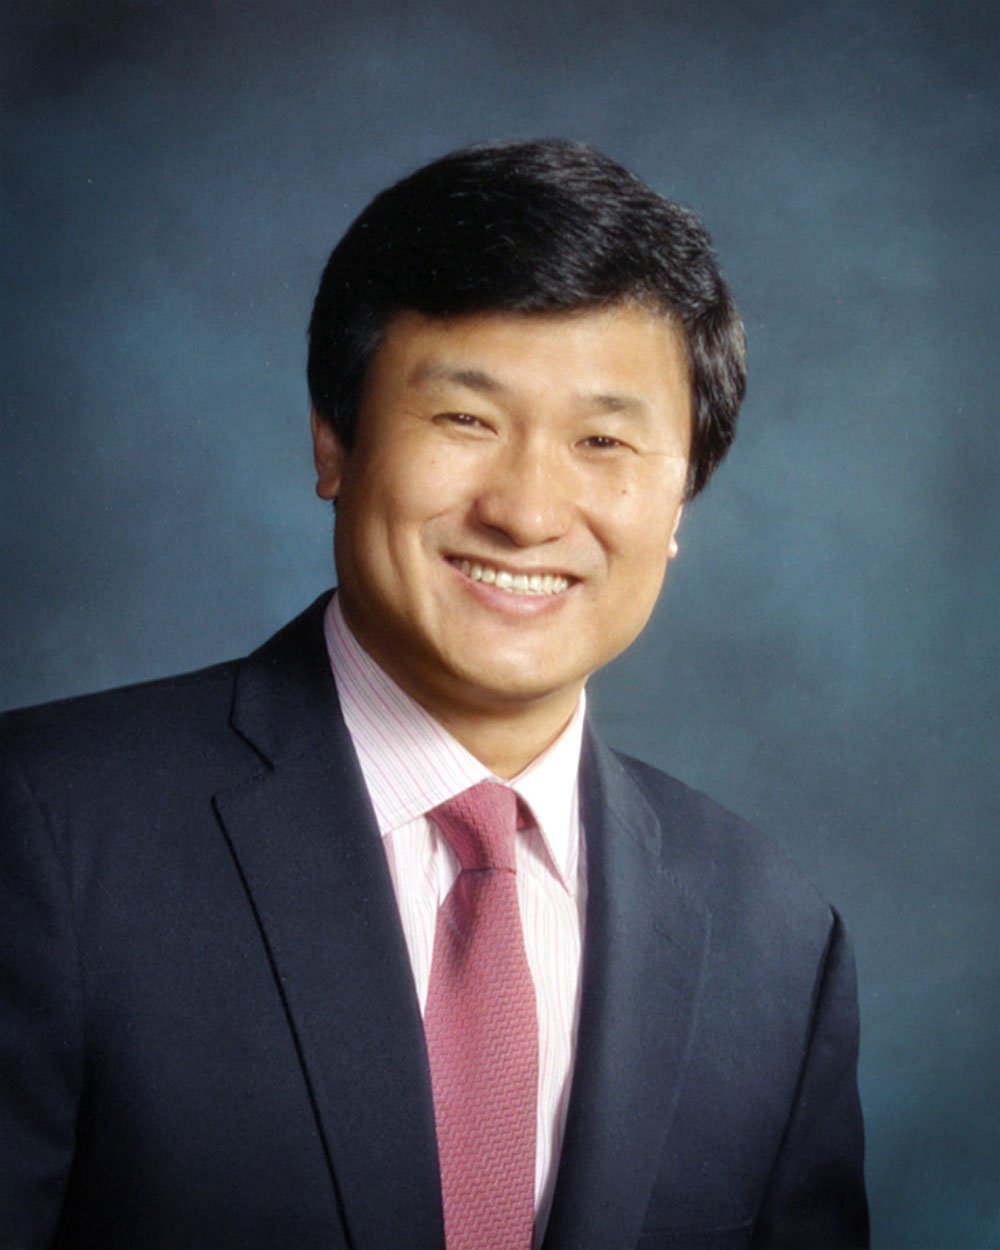 Li Lu Elected as New Caltech Trustee www.caltech.edu